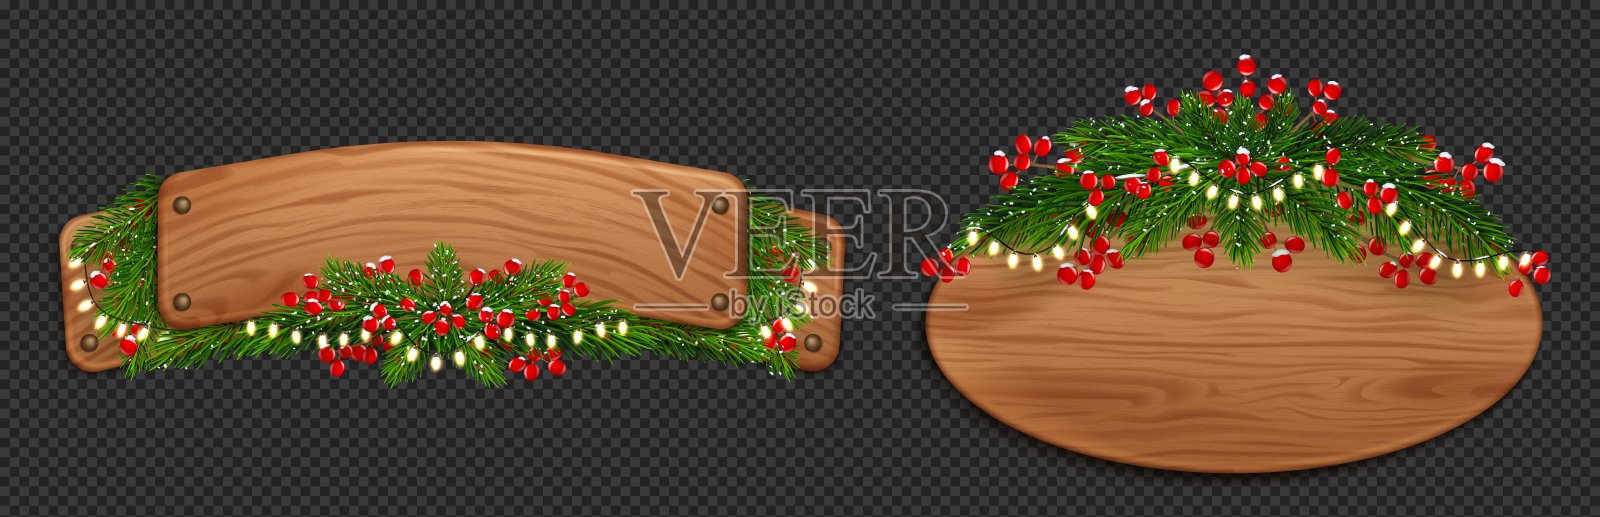 用冷杉和红浆果装饰的圣诞木板插画图片素材